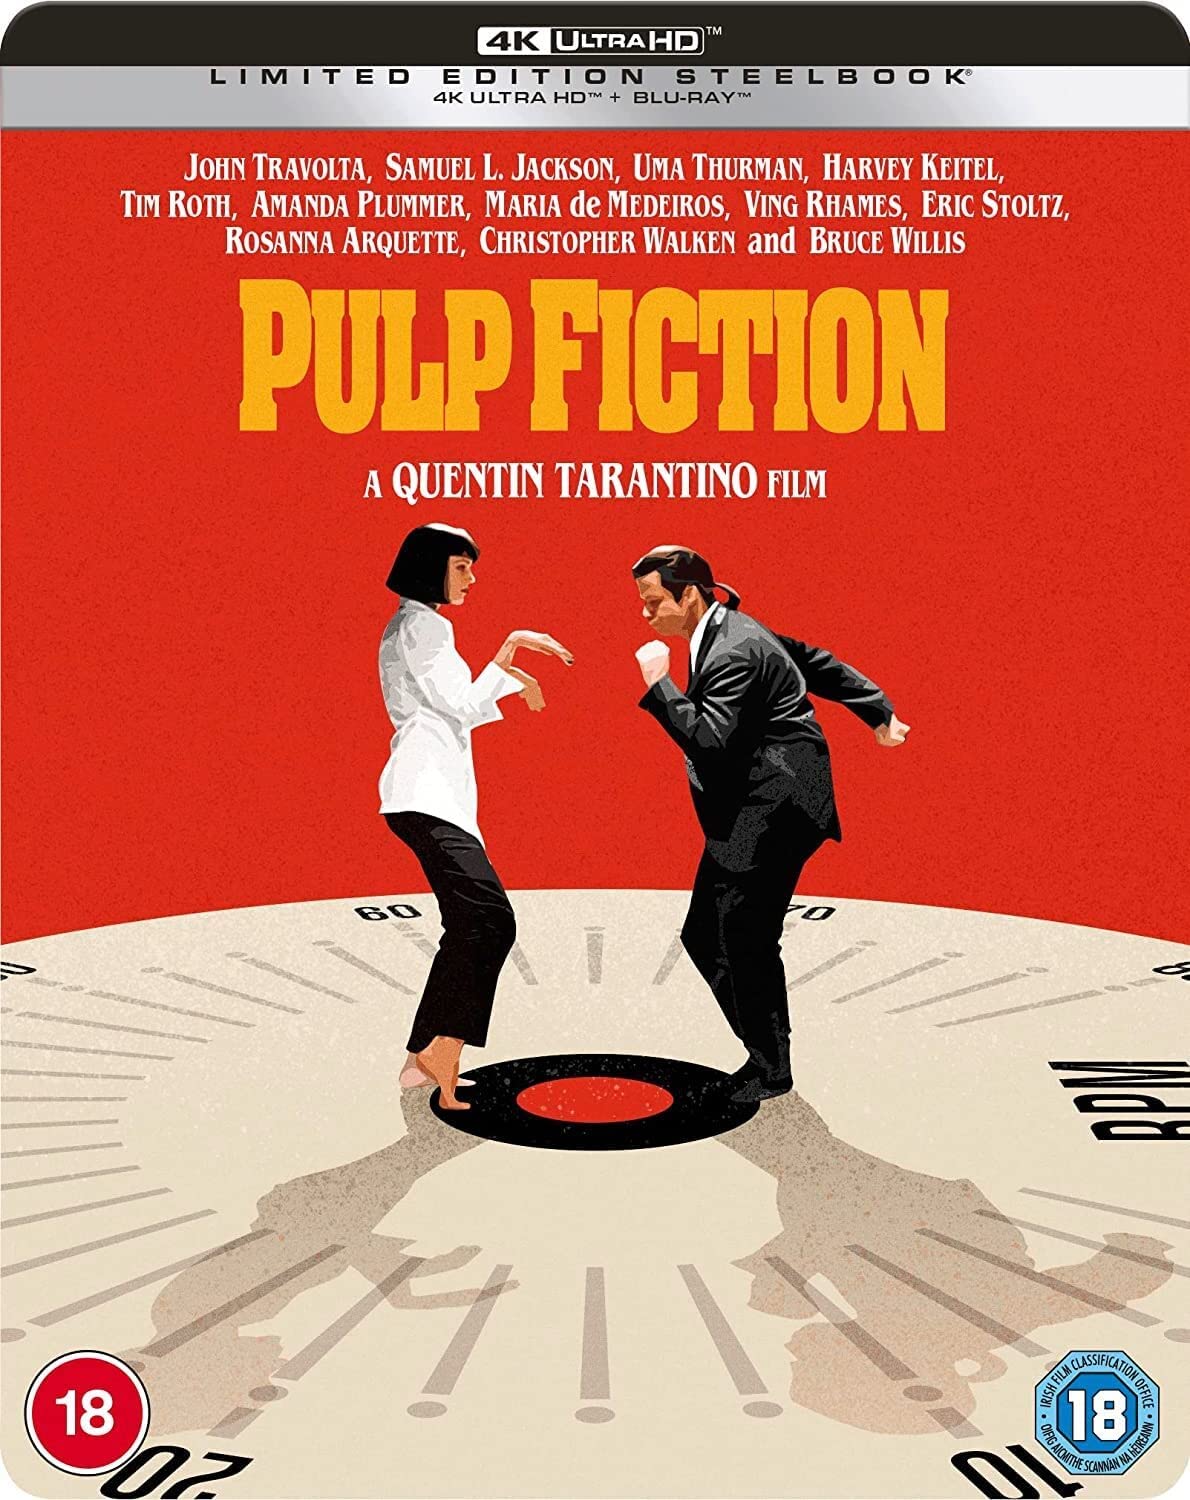 GAGNEZ "Pulp Fiction" sur un tout nouveau Steelbook 4K UHD 3